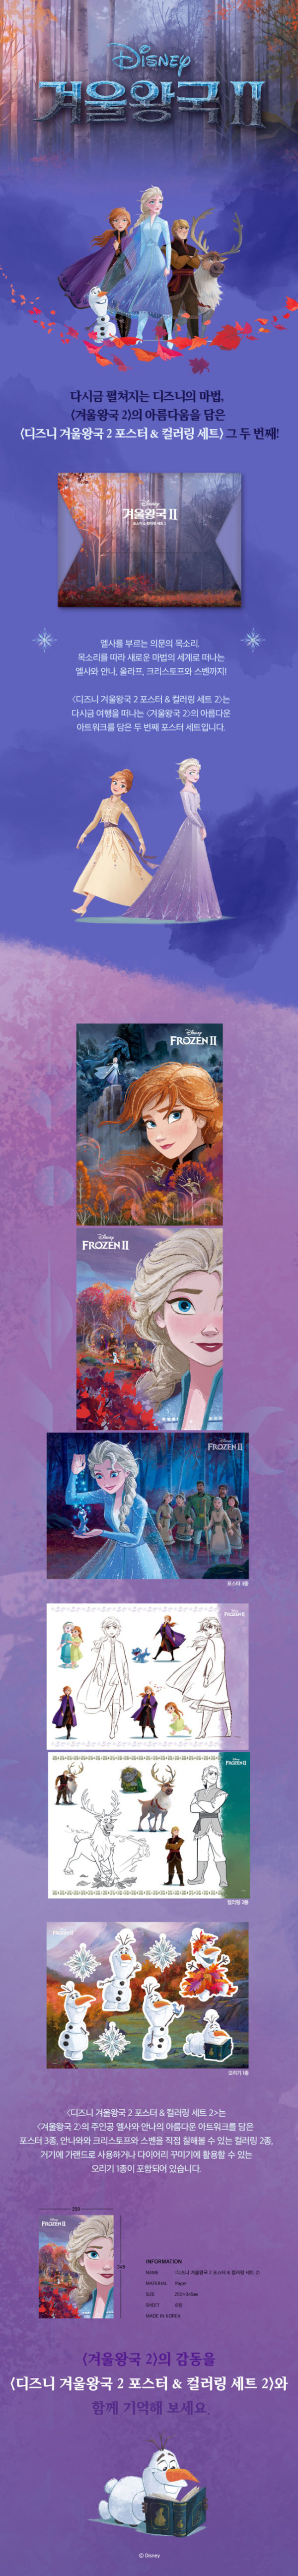 アナと雪の女王2 ポスター&塗り絵セット ディズニーストアー 通販 POSTER AMAZON